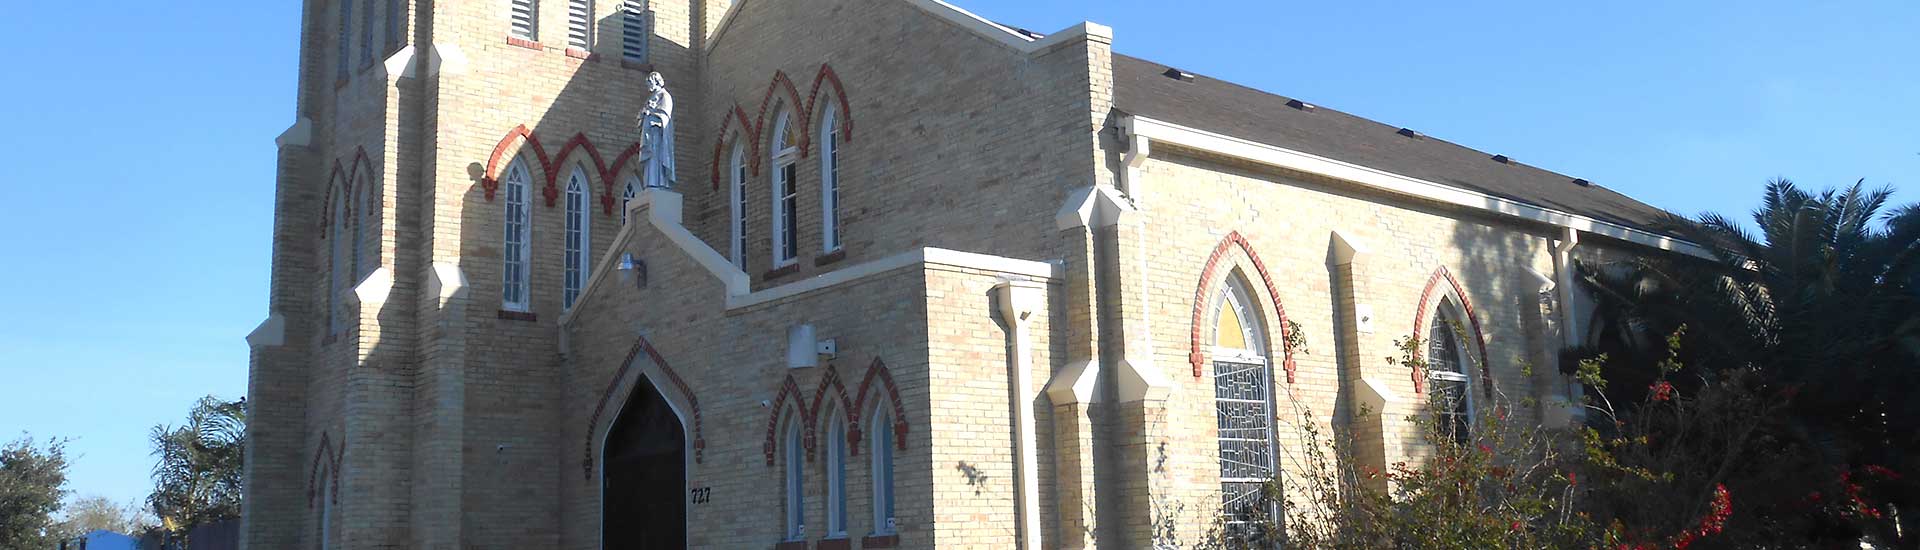 Church in Alamo | City of Alamo EDC